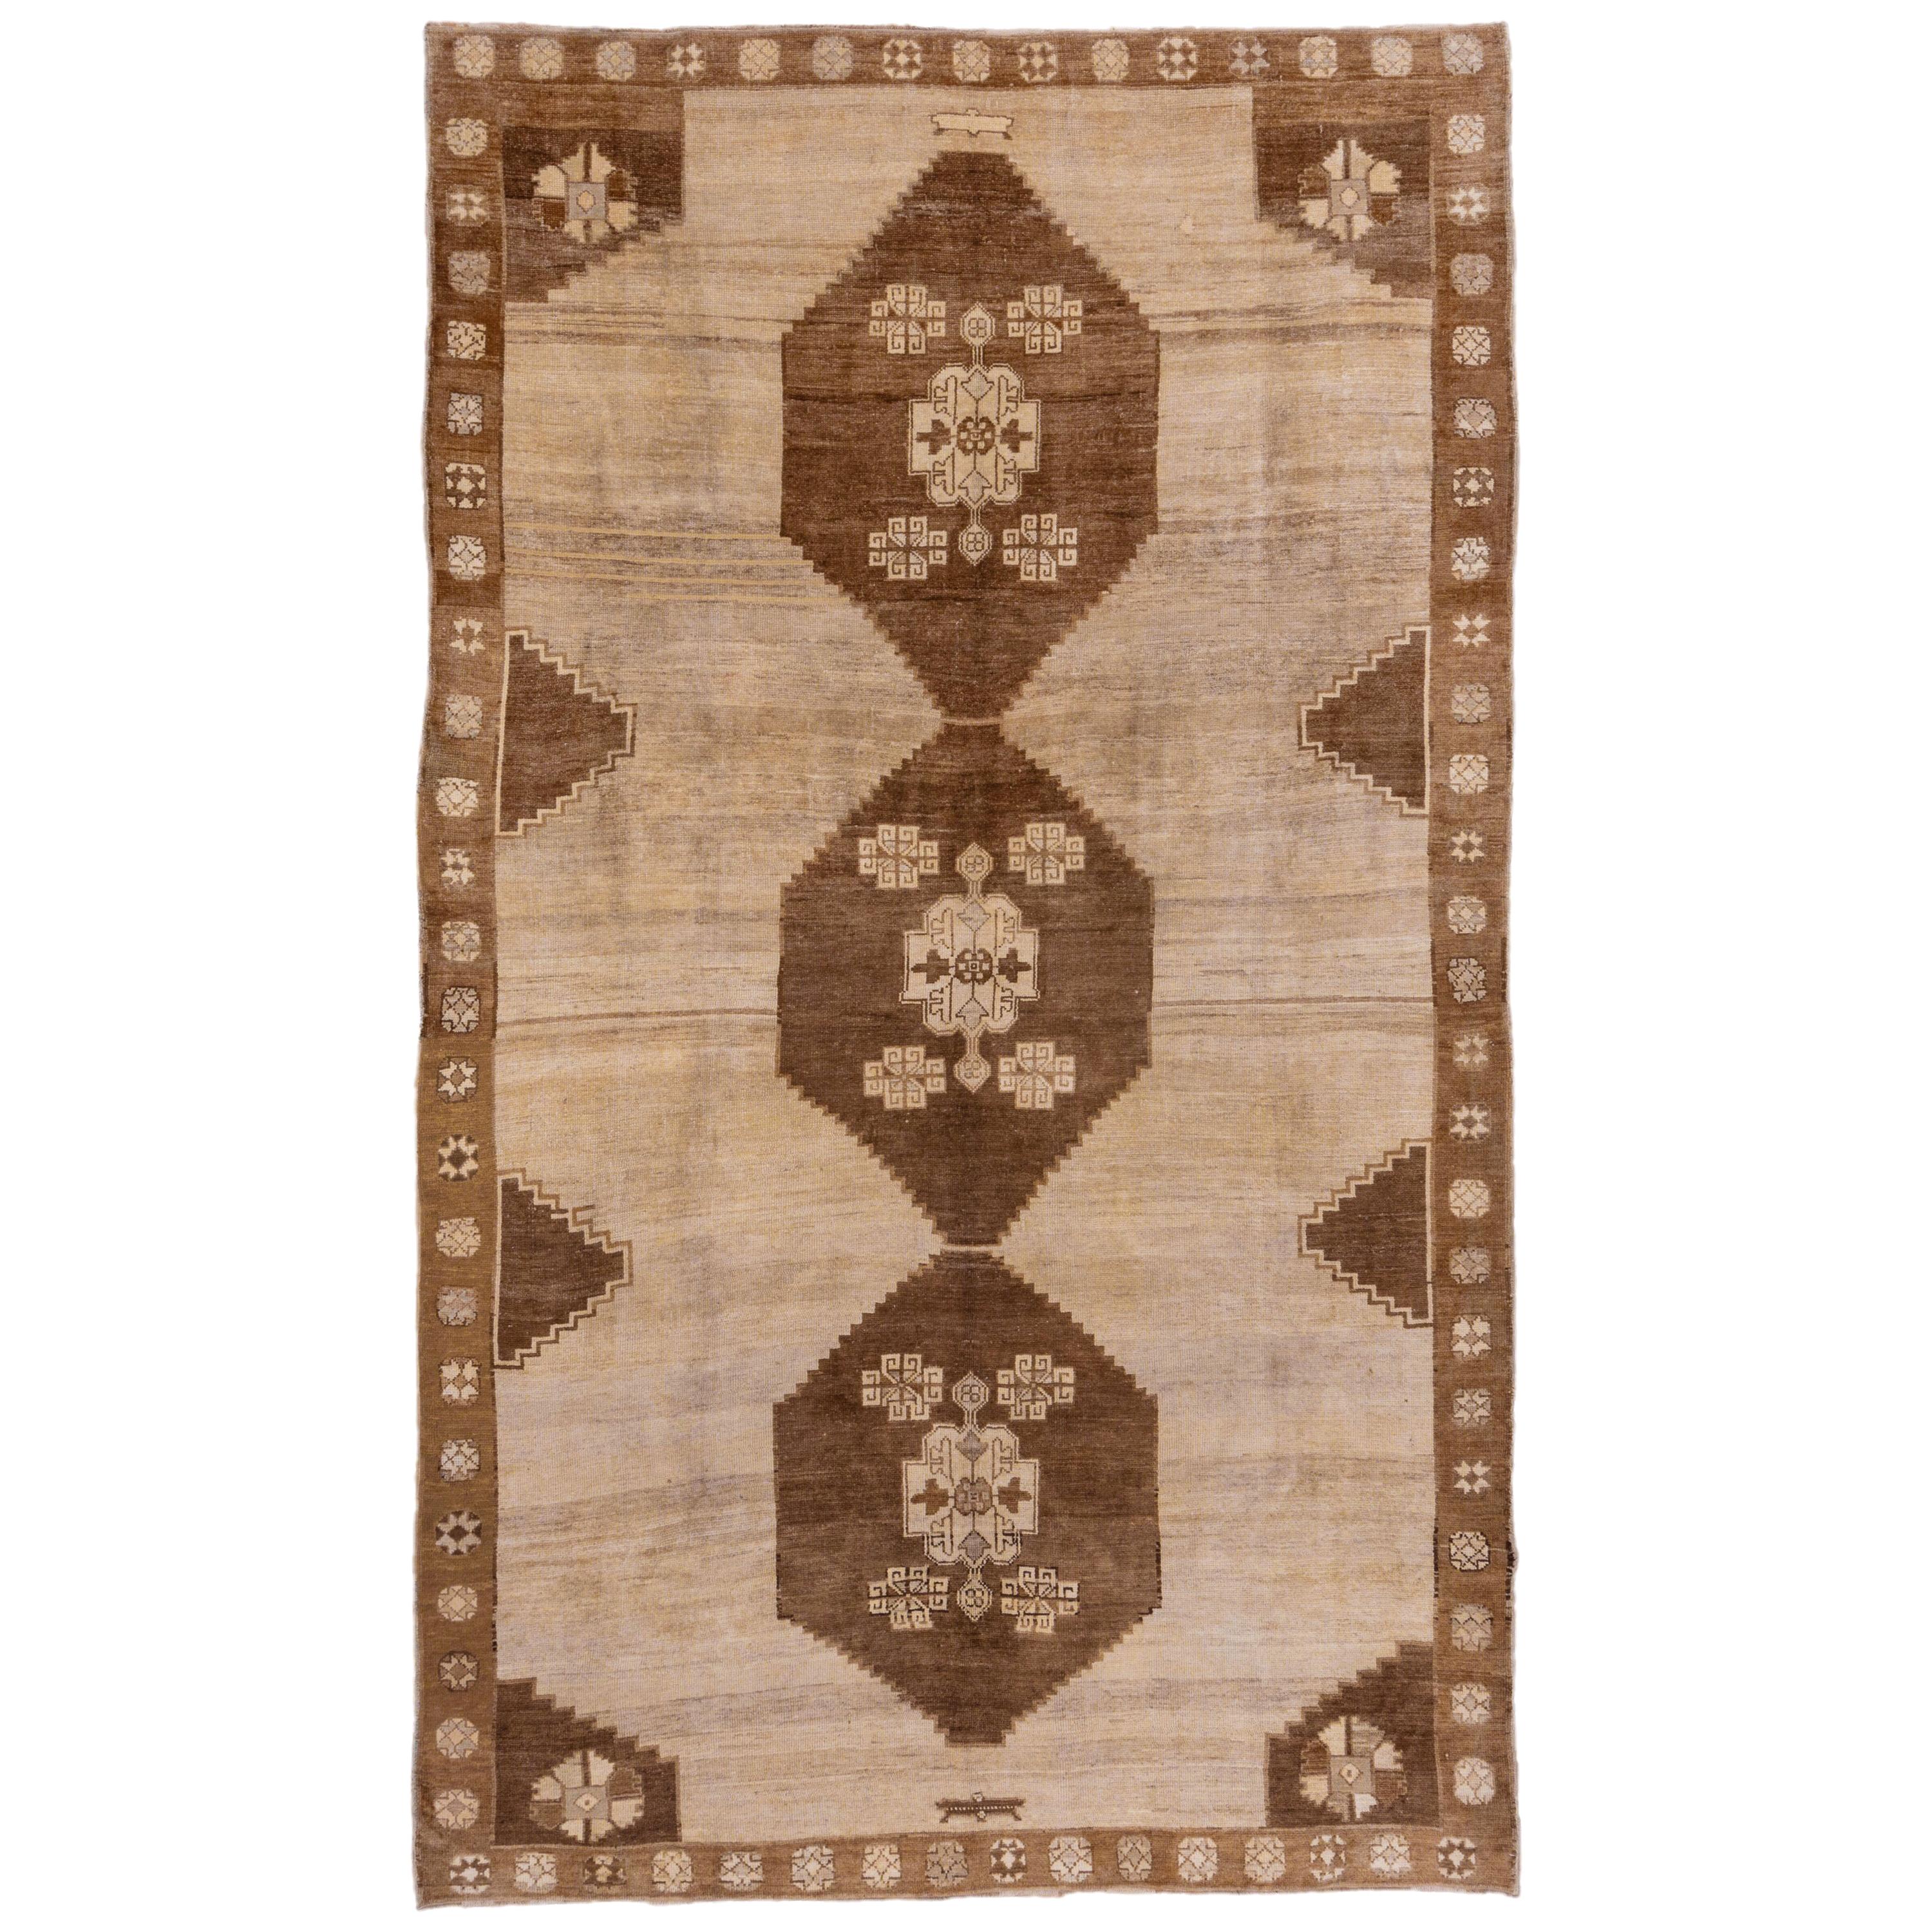 Two-Toned Brown Turkish Oushak Carpet